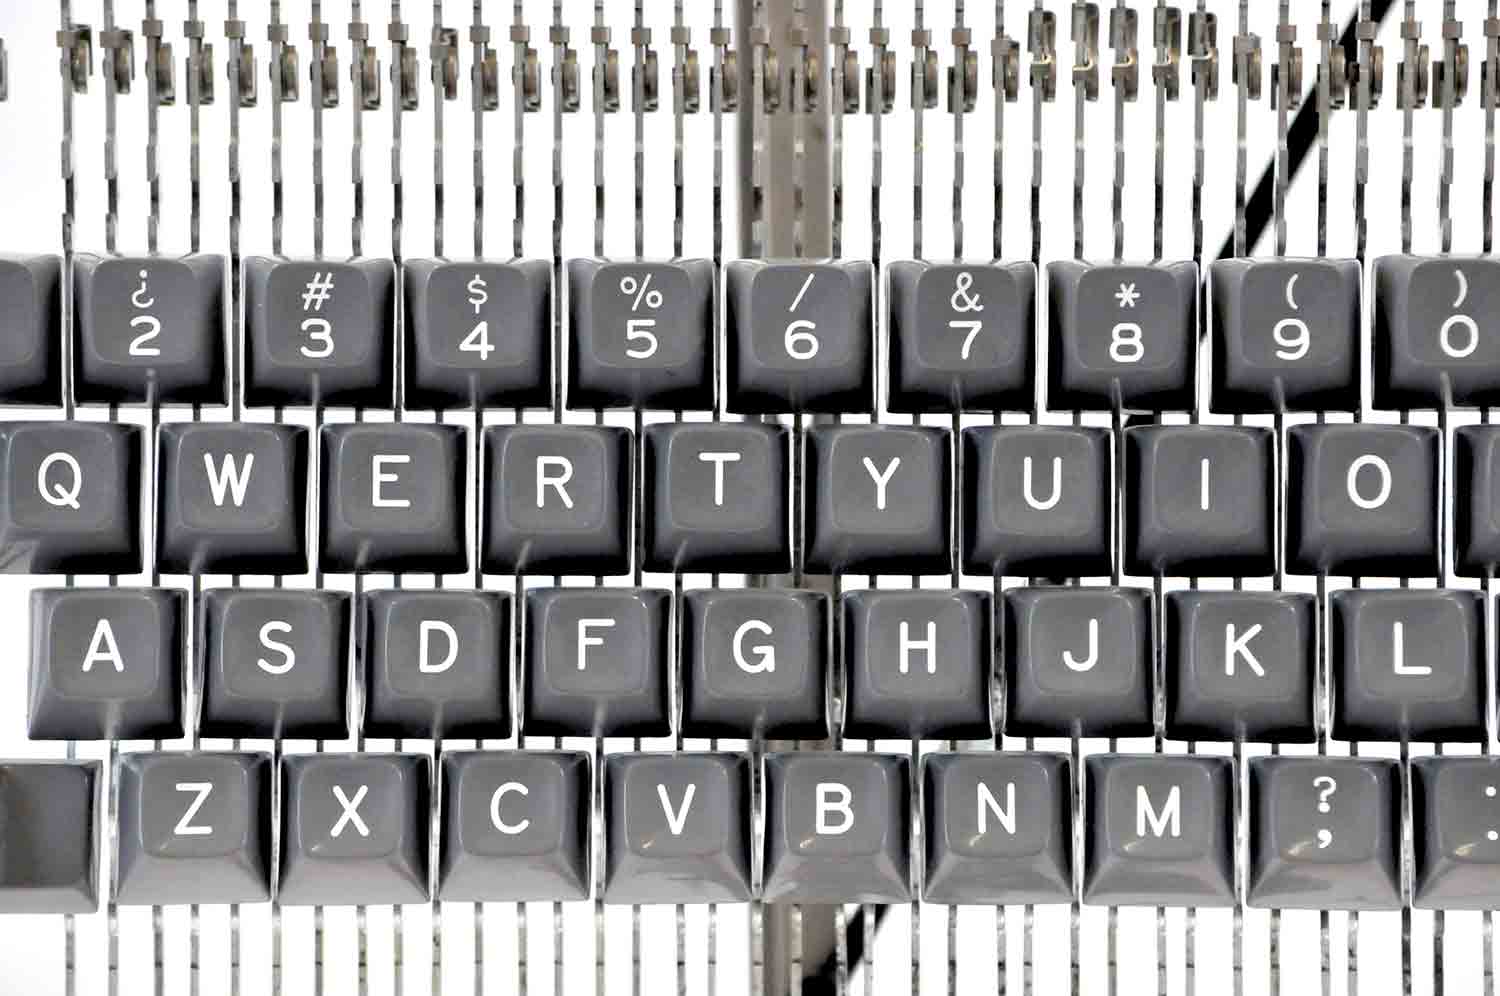 Escultura d'una interpretació d'una màquina d'escriure IBM Selectric dels anys 60